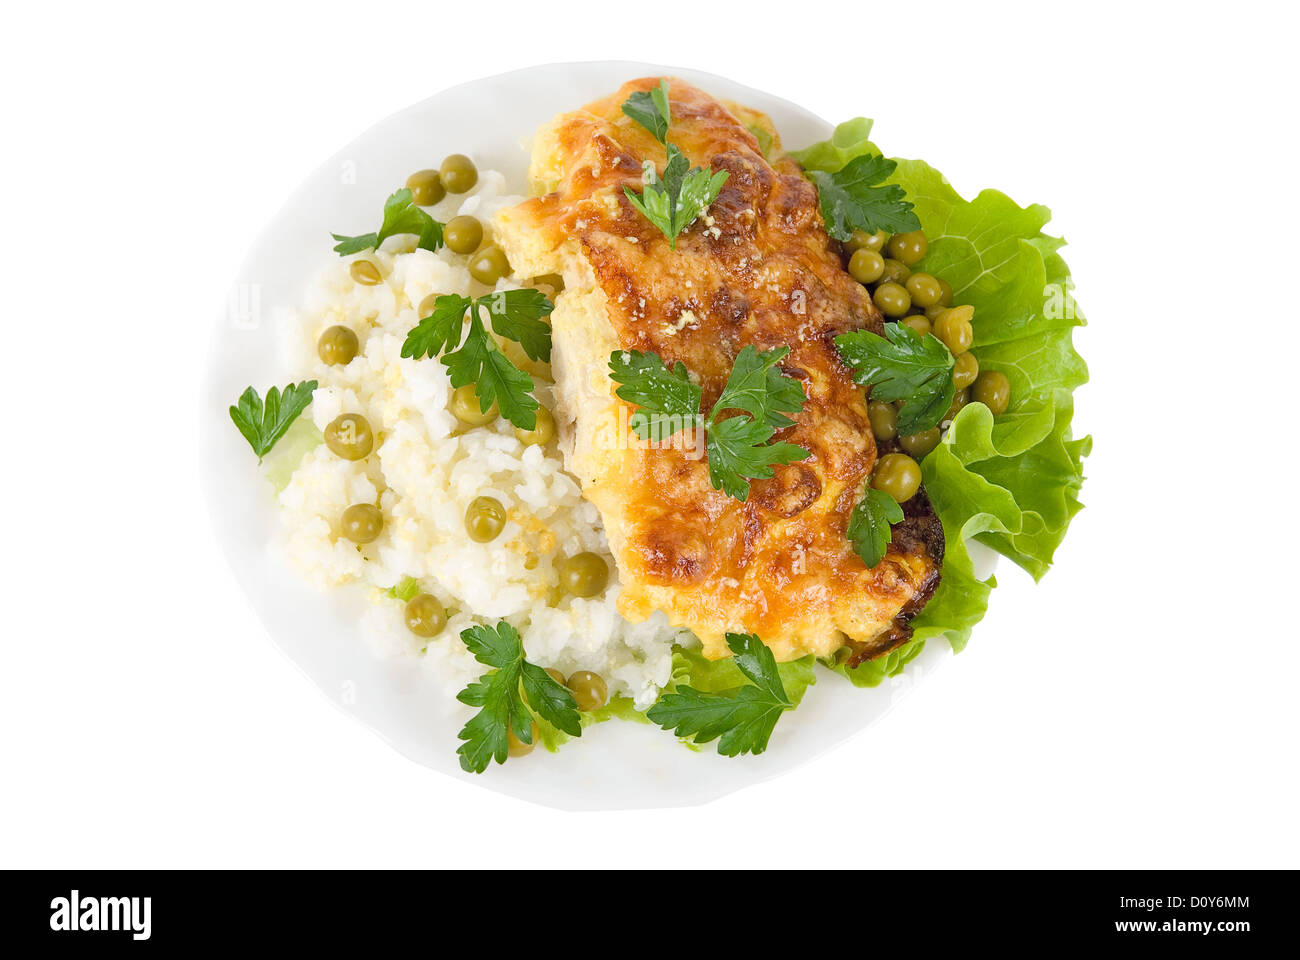 Chicken dish Stock Photo